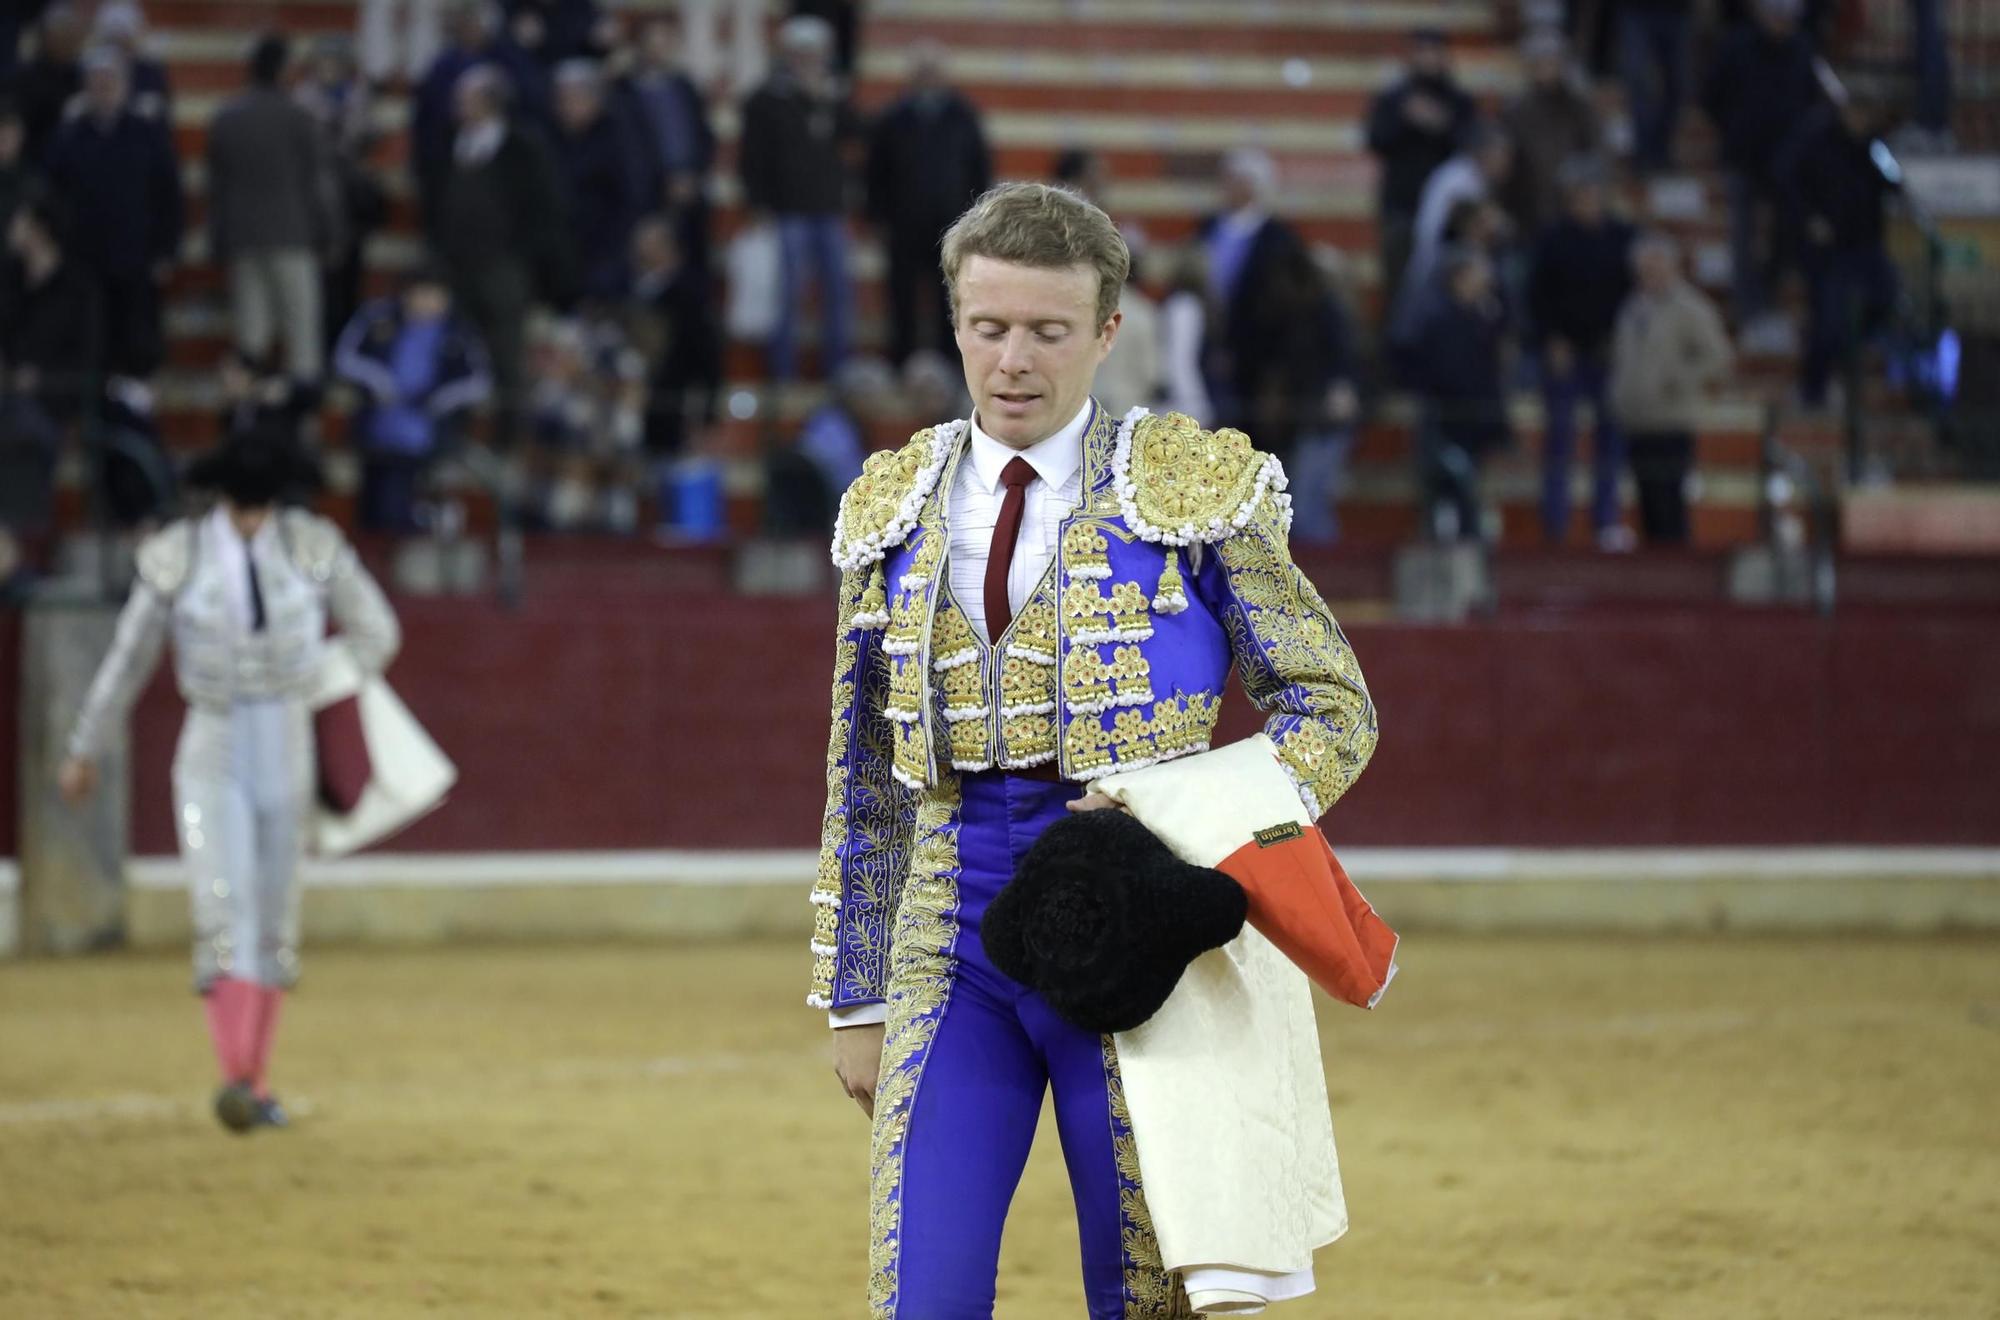 En imágenes | El Cid, Borja Jiménez y Clemente en la Feria taurina de San Jorge de Zaragoza